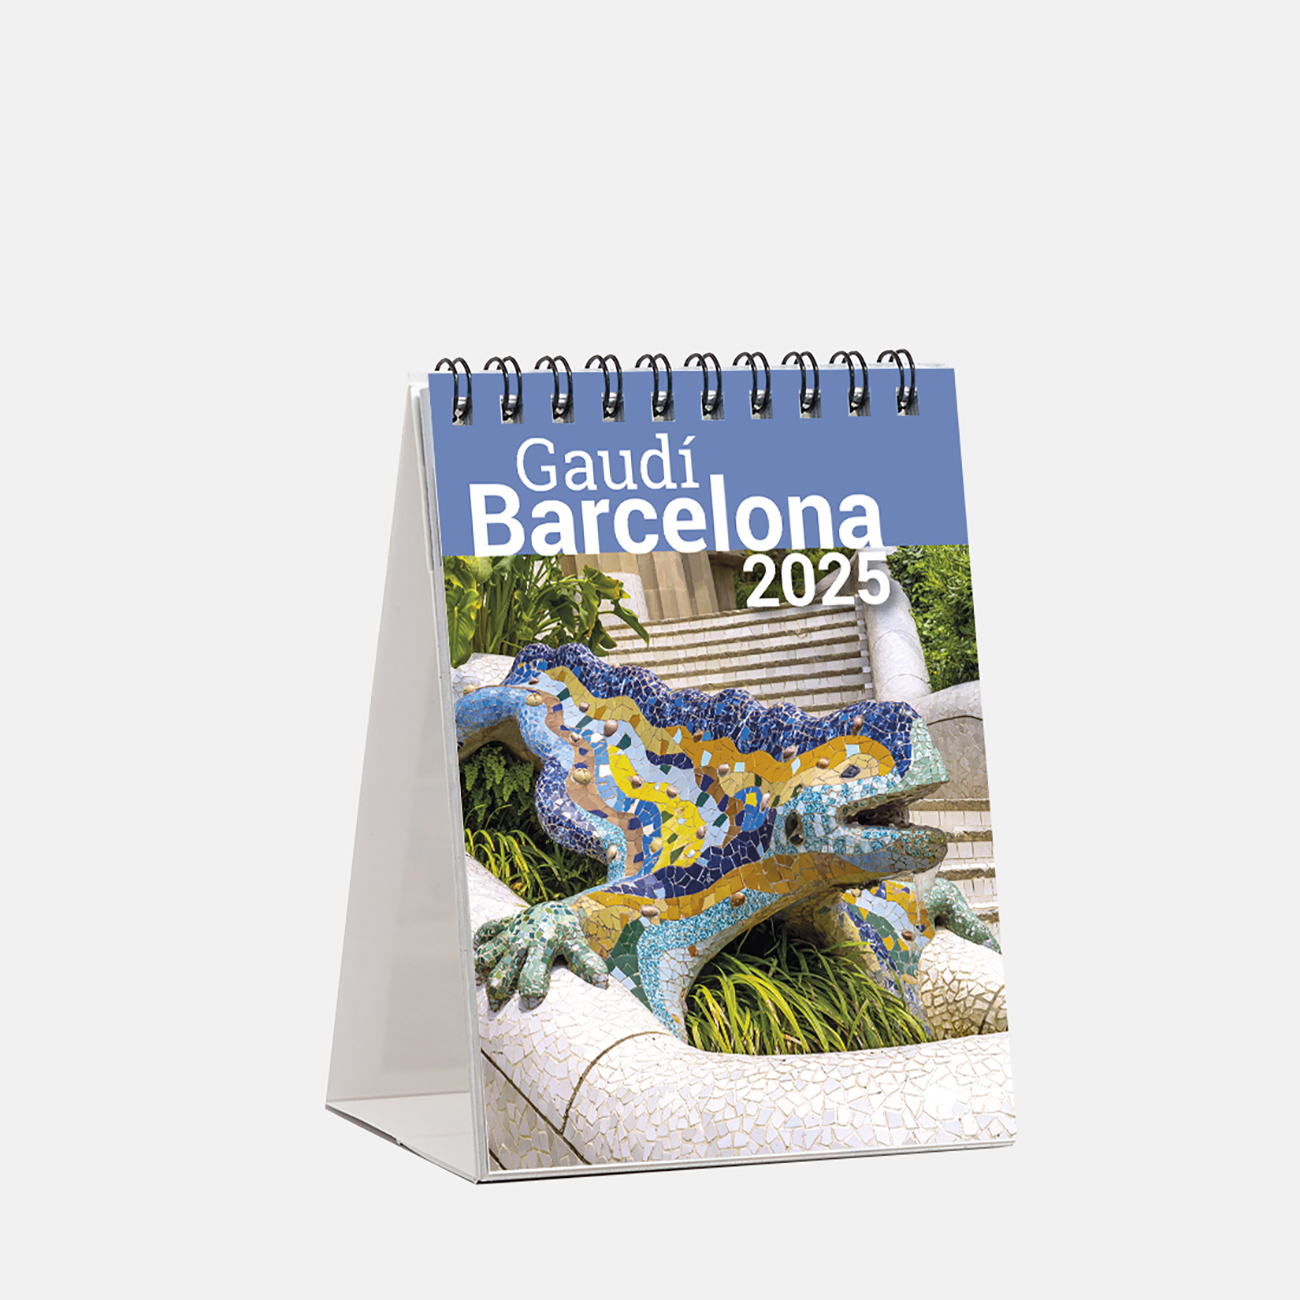 Calendari 2025 Gaudí sm25g1 calendario mini 2025 gaudi